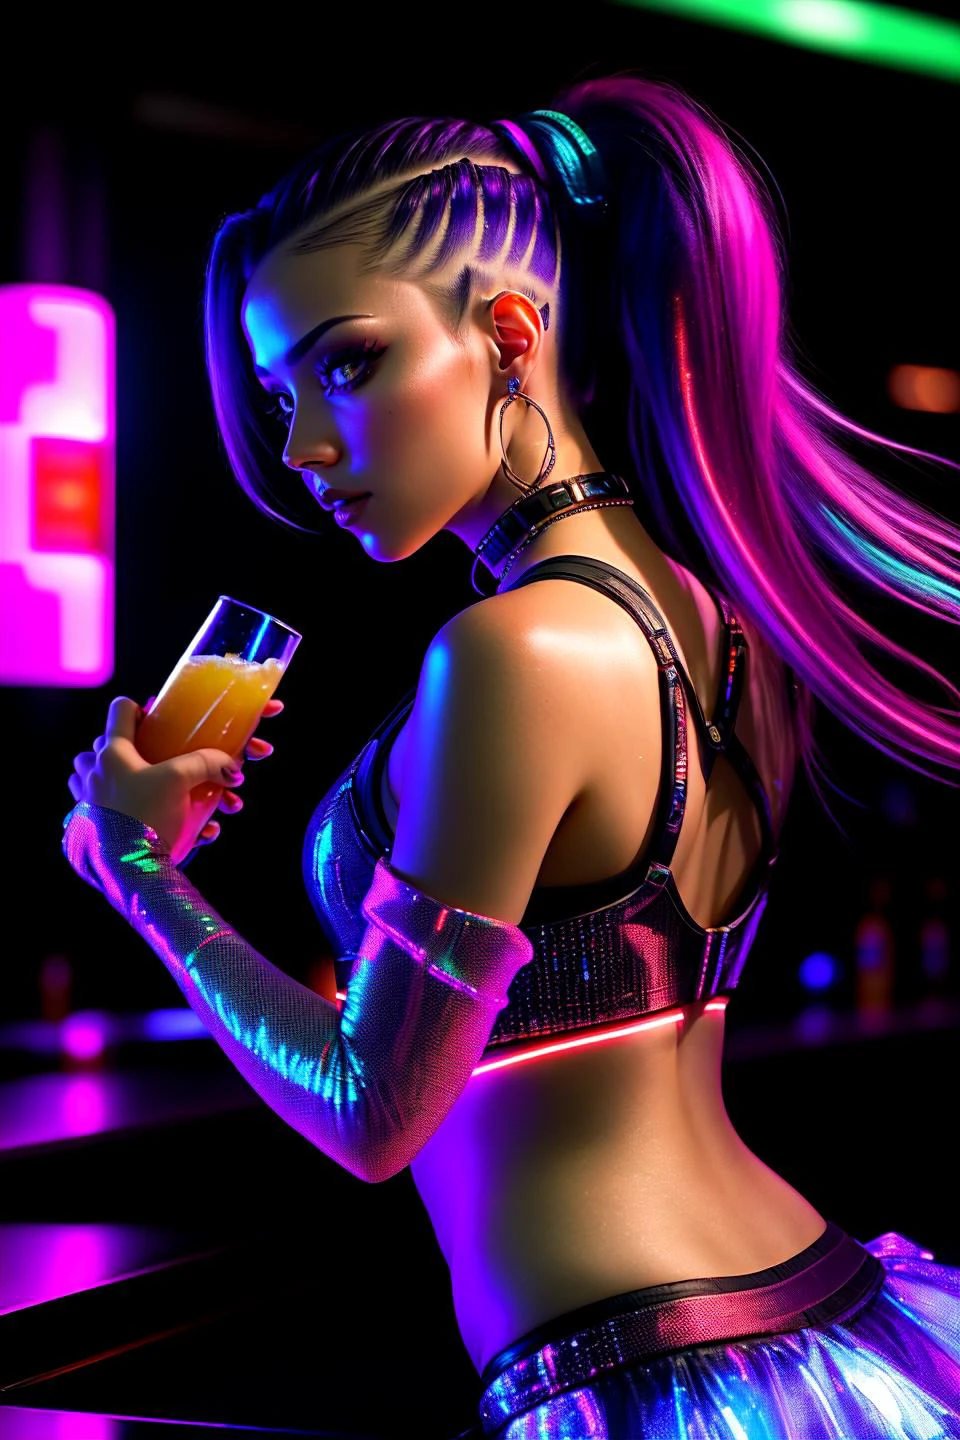 未来的なナイトクラブのバーに立つサイバーパンクな女性の写真, 光る飲み物を手に持ち. 彼女の髪は、なめらかで未来的なポニーテールにまとめられている。, 輝くアクセント付き. 彼女はクラブの鮮やかな光を捉える、体にぴったりフィットするサイバーパンクの衣装を着ている. クラブの環境にはホログラフィックディスプレイが備わっている, 流れ落ちる光の滝, 躍動するダンスフロア. カメラは彼女の上半身に焦点を合わせます, クラブのダイナミックな雰囲気の中で、彼女のリラックスした魅力的な存在感を捉えた.
 